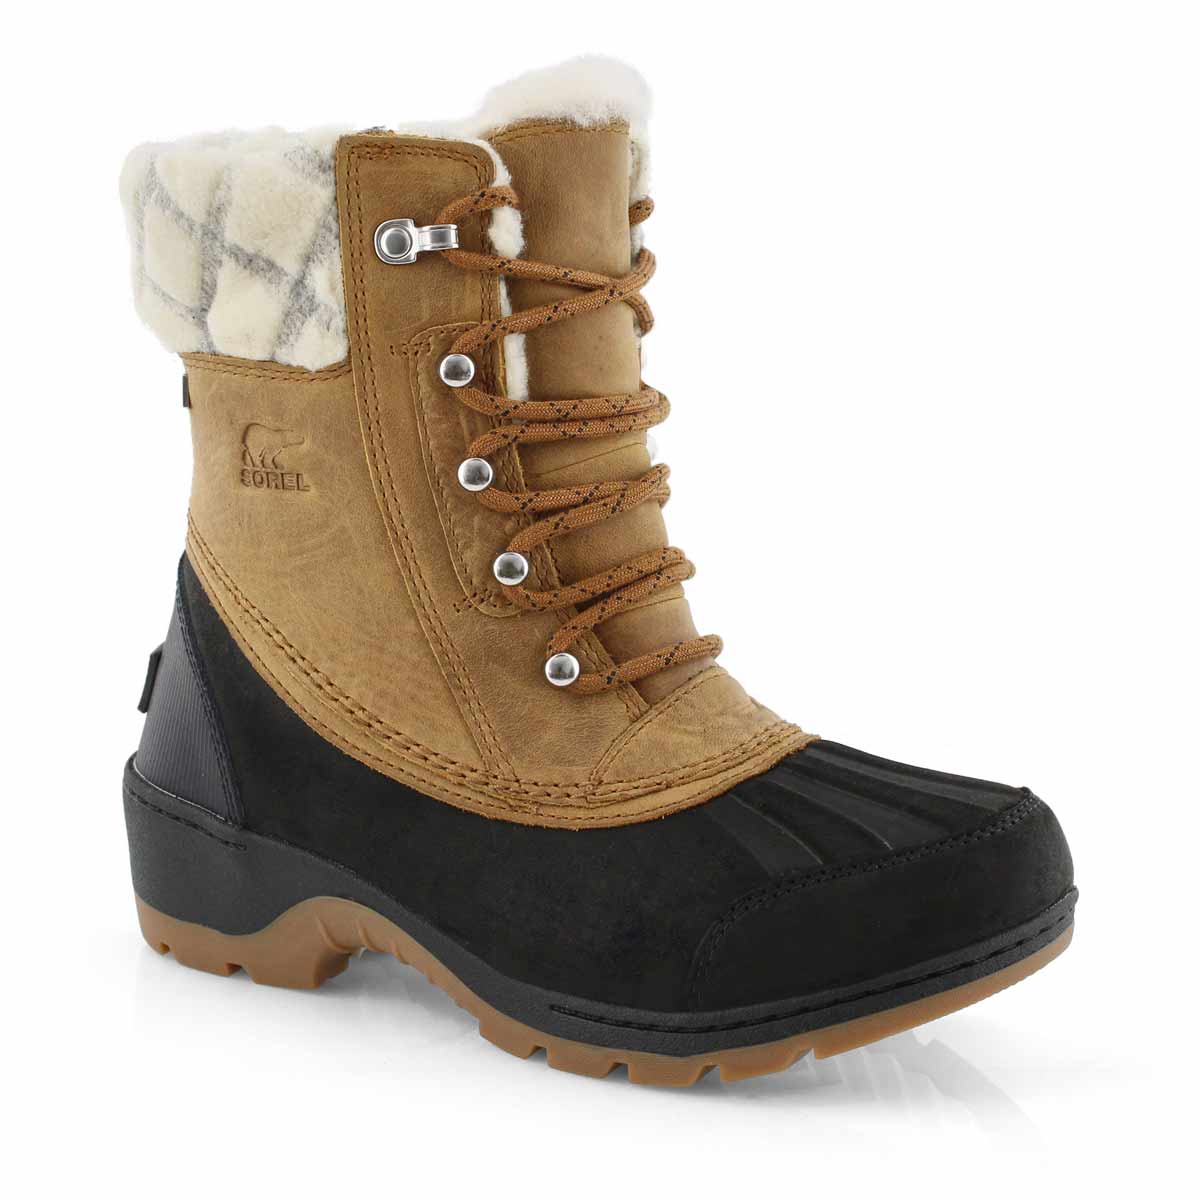 winter waterproof womens boots